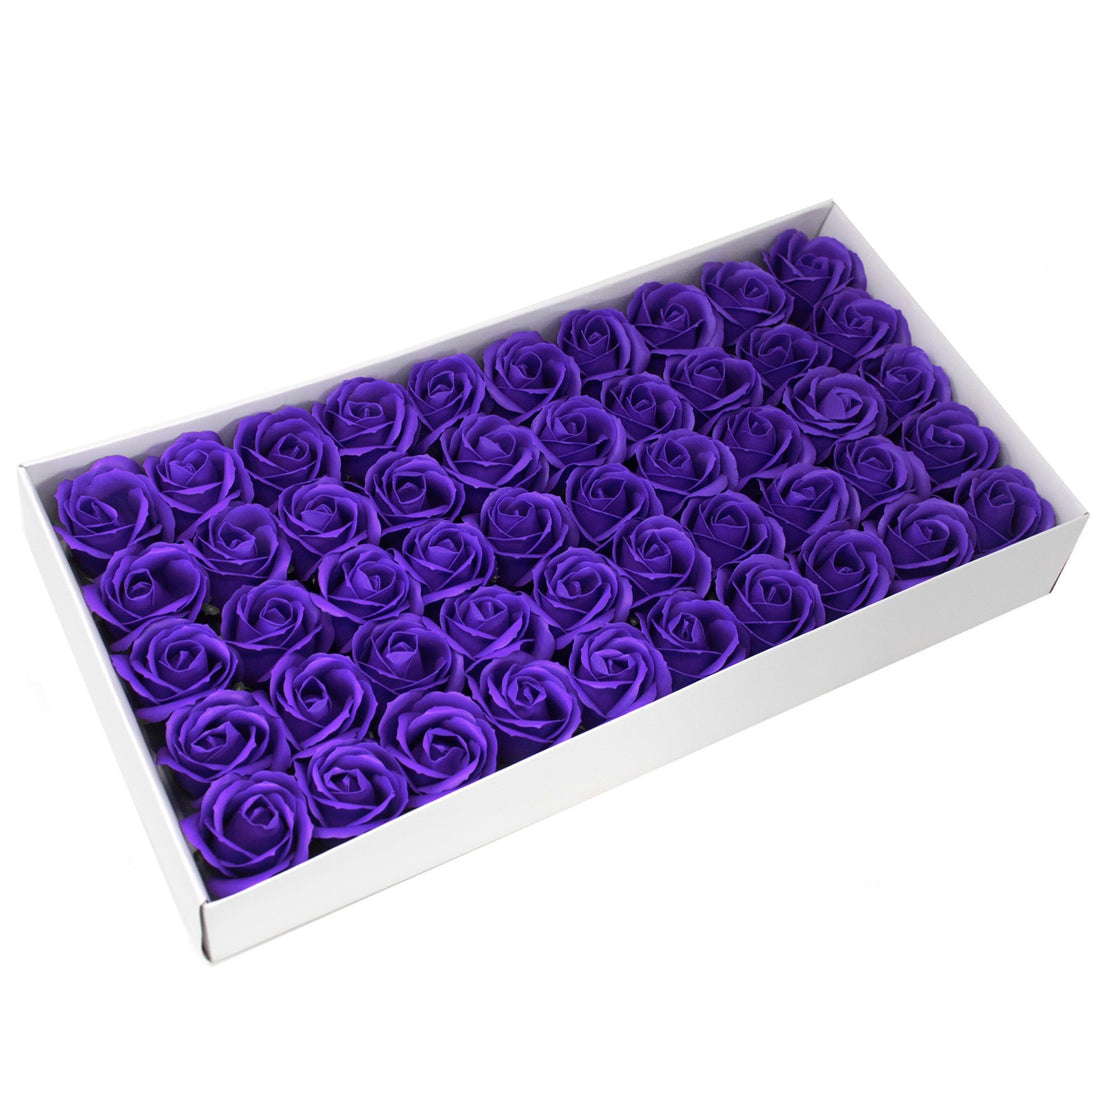 Craft Soap Flowers - Med Rose - Violet x 10 pcs